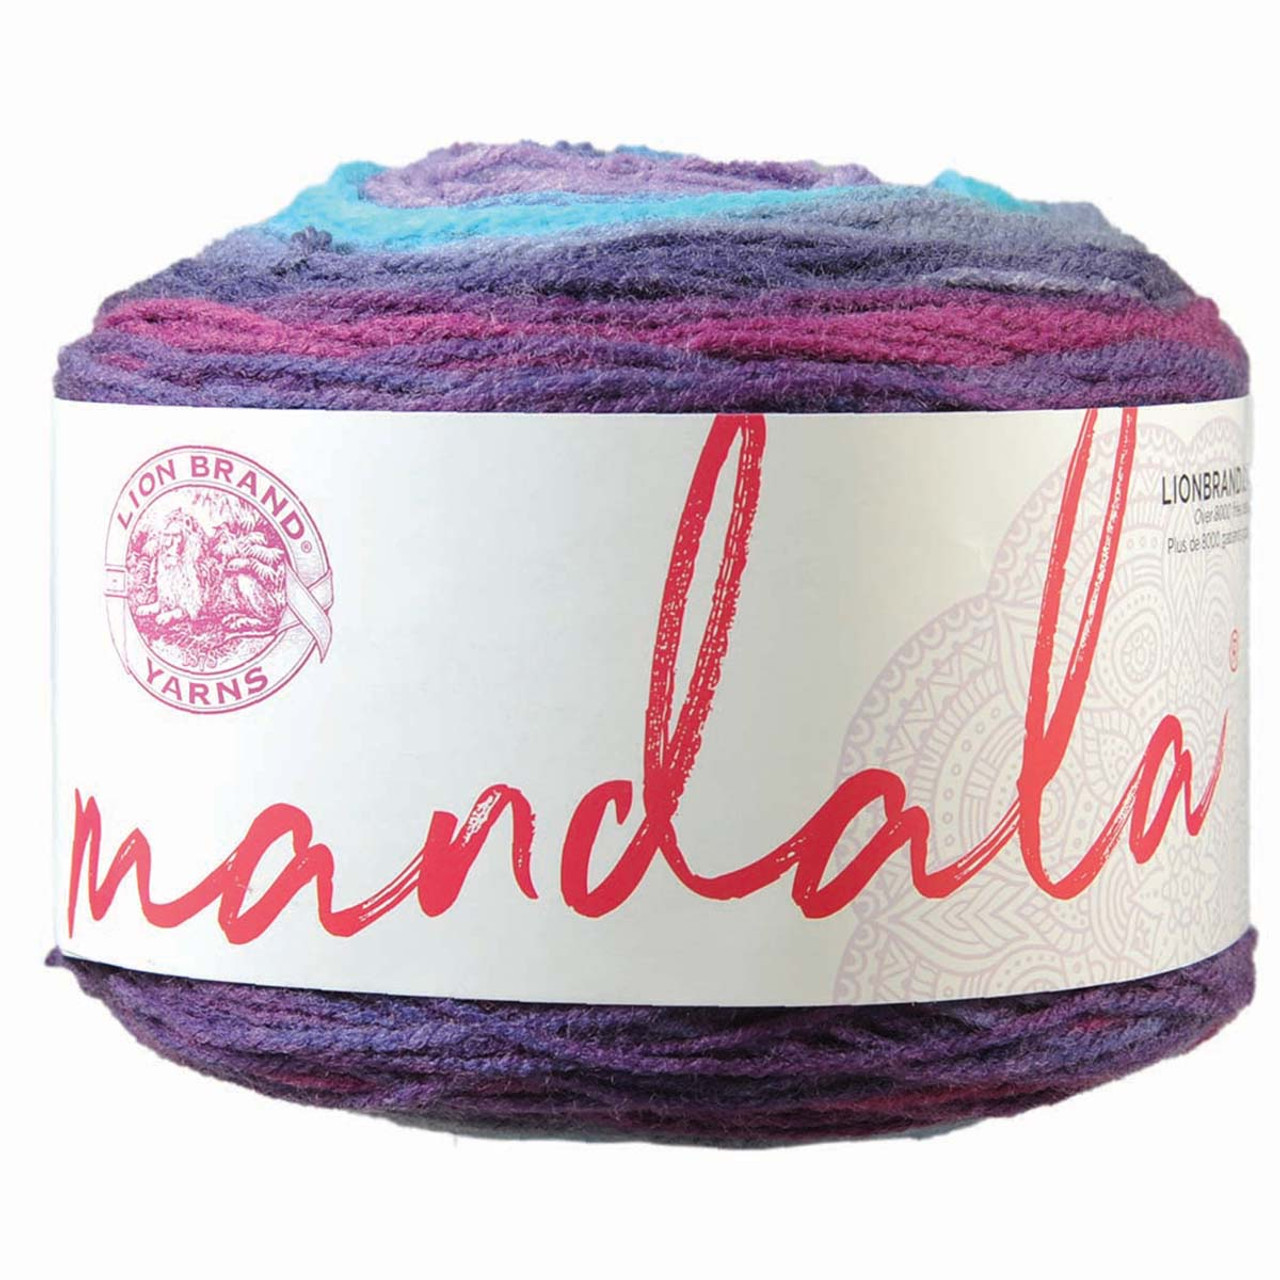 Lion Brand Yarn Mandala Sparkle Yarn by Lion Brand